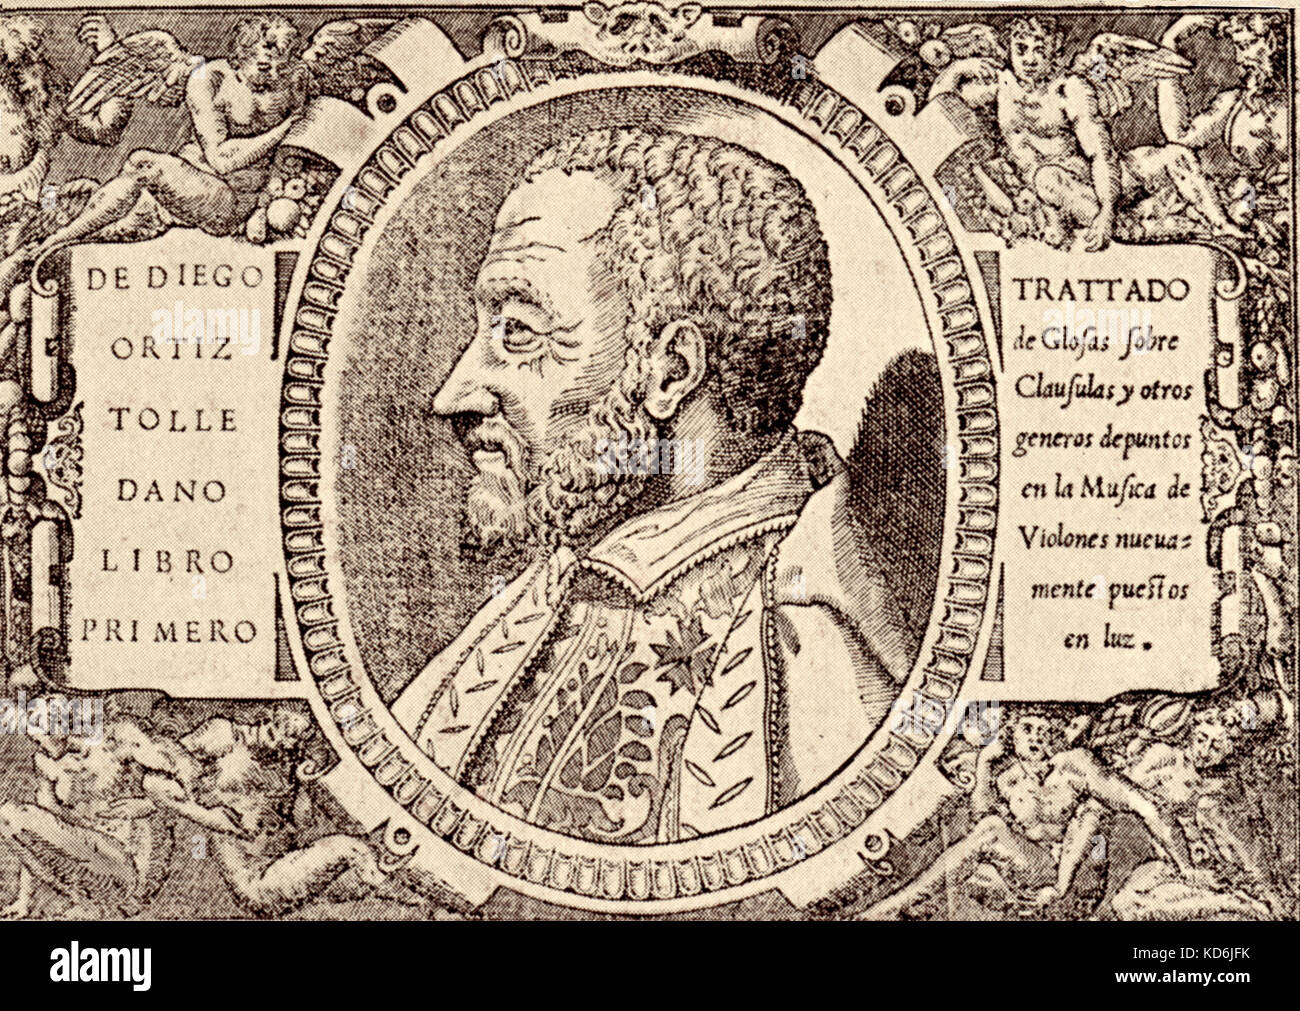 Diego Ortiz ritratto del compositore spagnolo. 1510-1570. Preso dalla pagina del titolo di "Trattado de Glosas…en las Musica de Violines, Roma 1553. Foto Stock